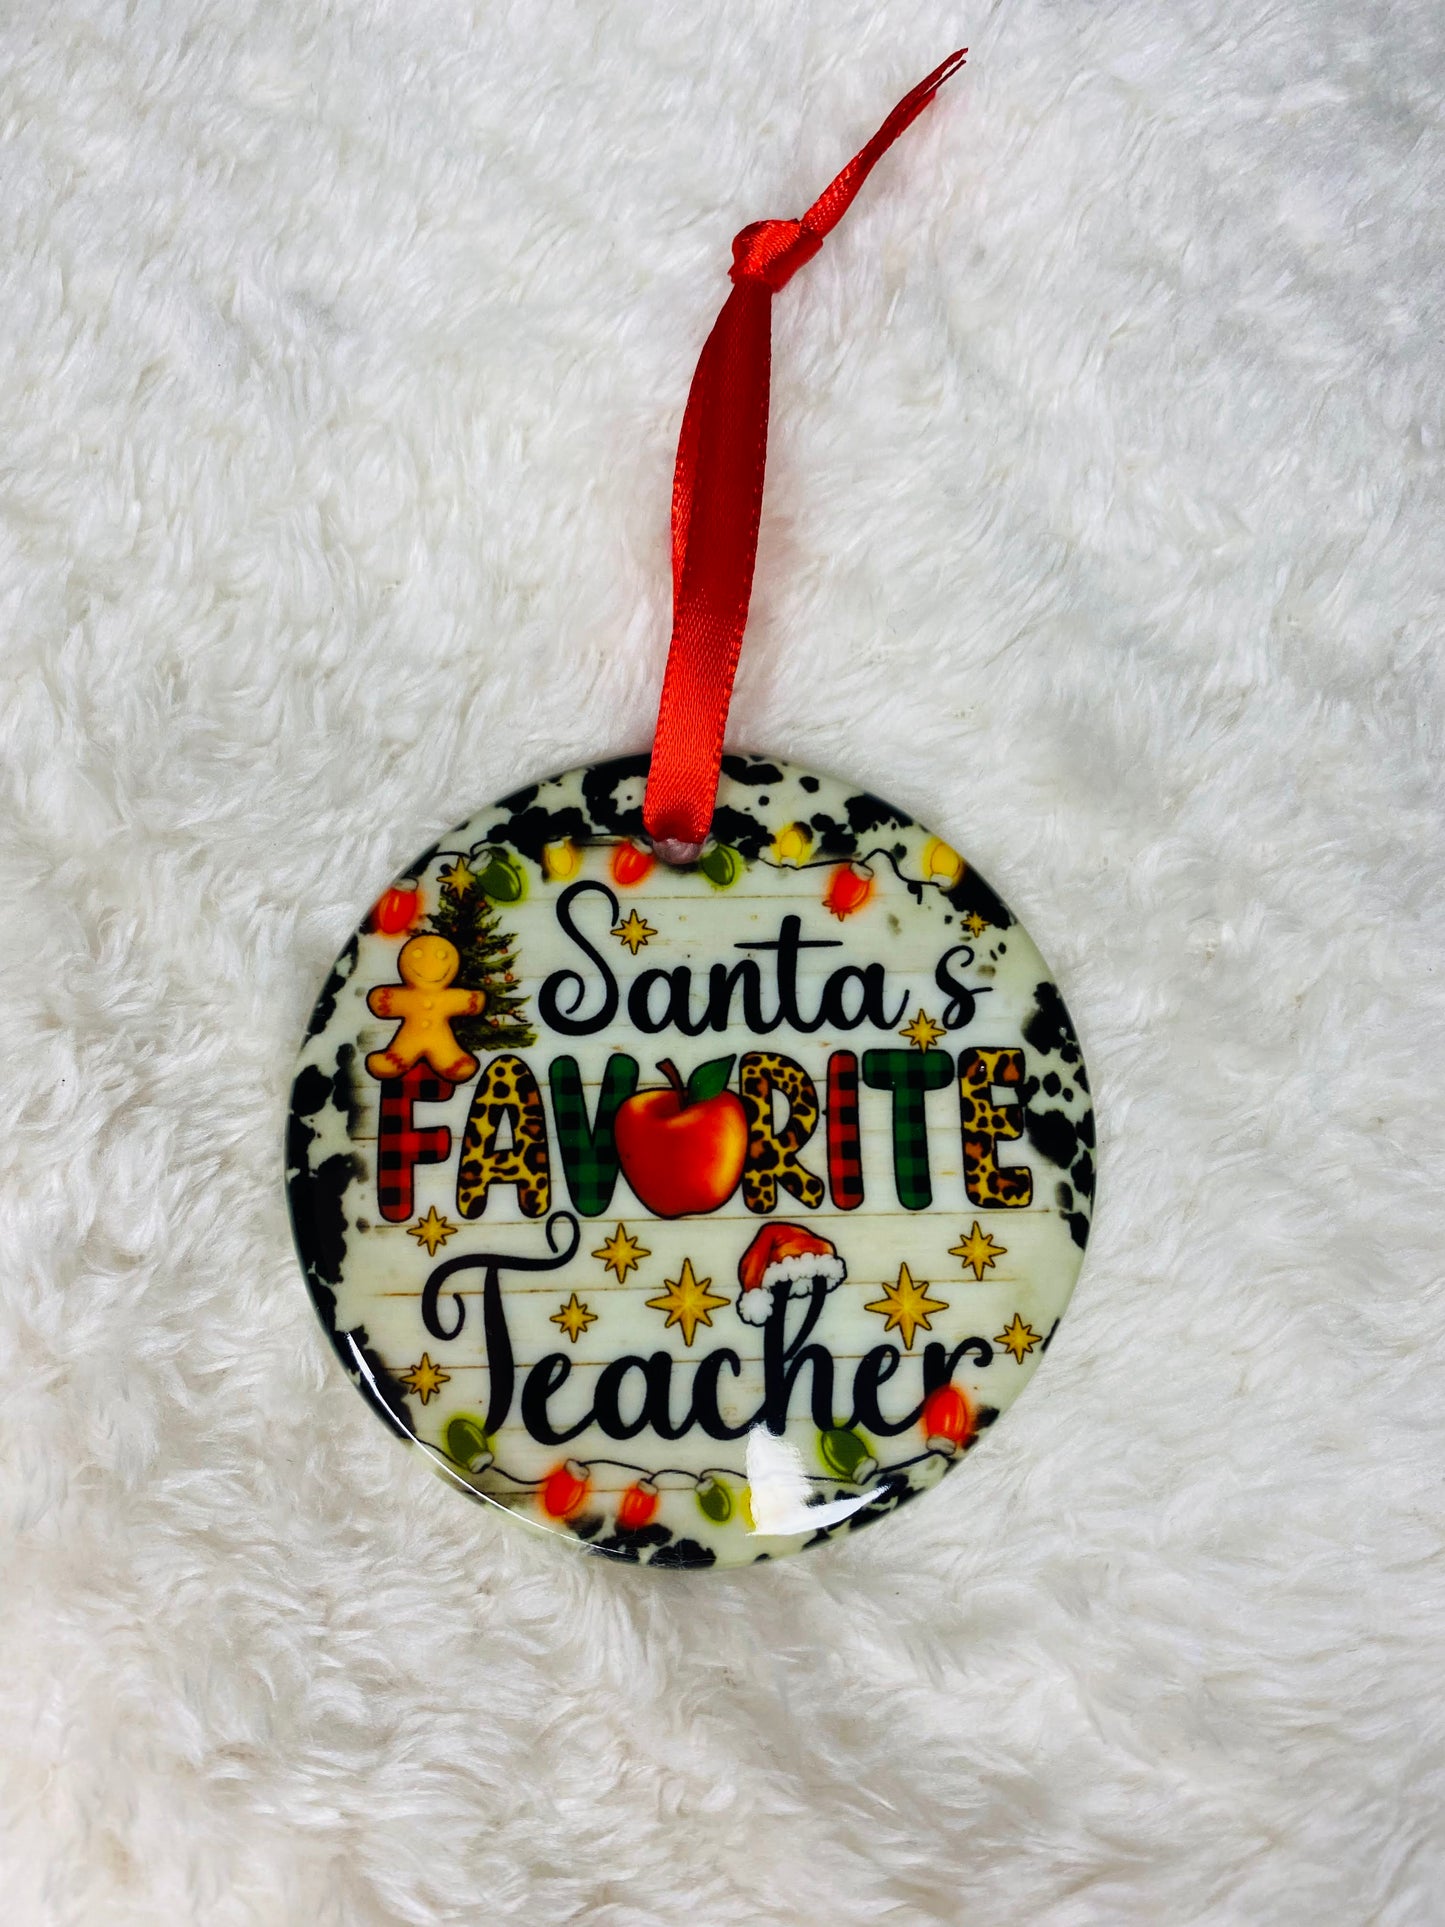 "Santa's Favorite Teacher" ceramic ornament